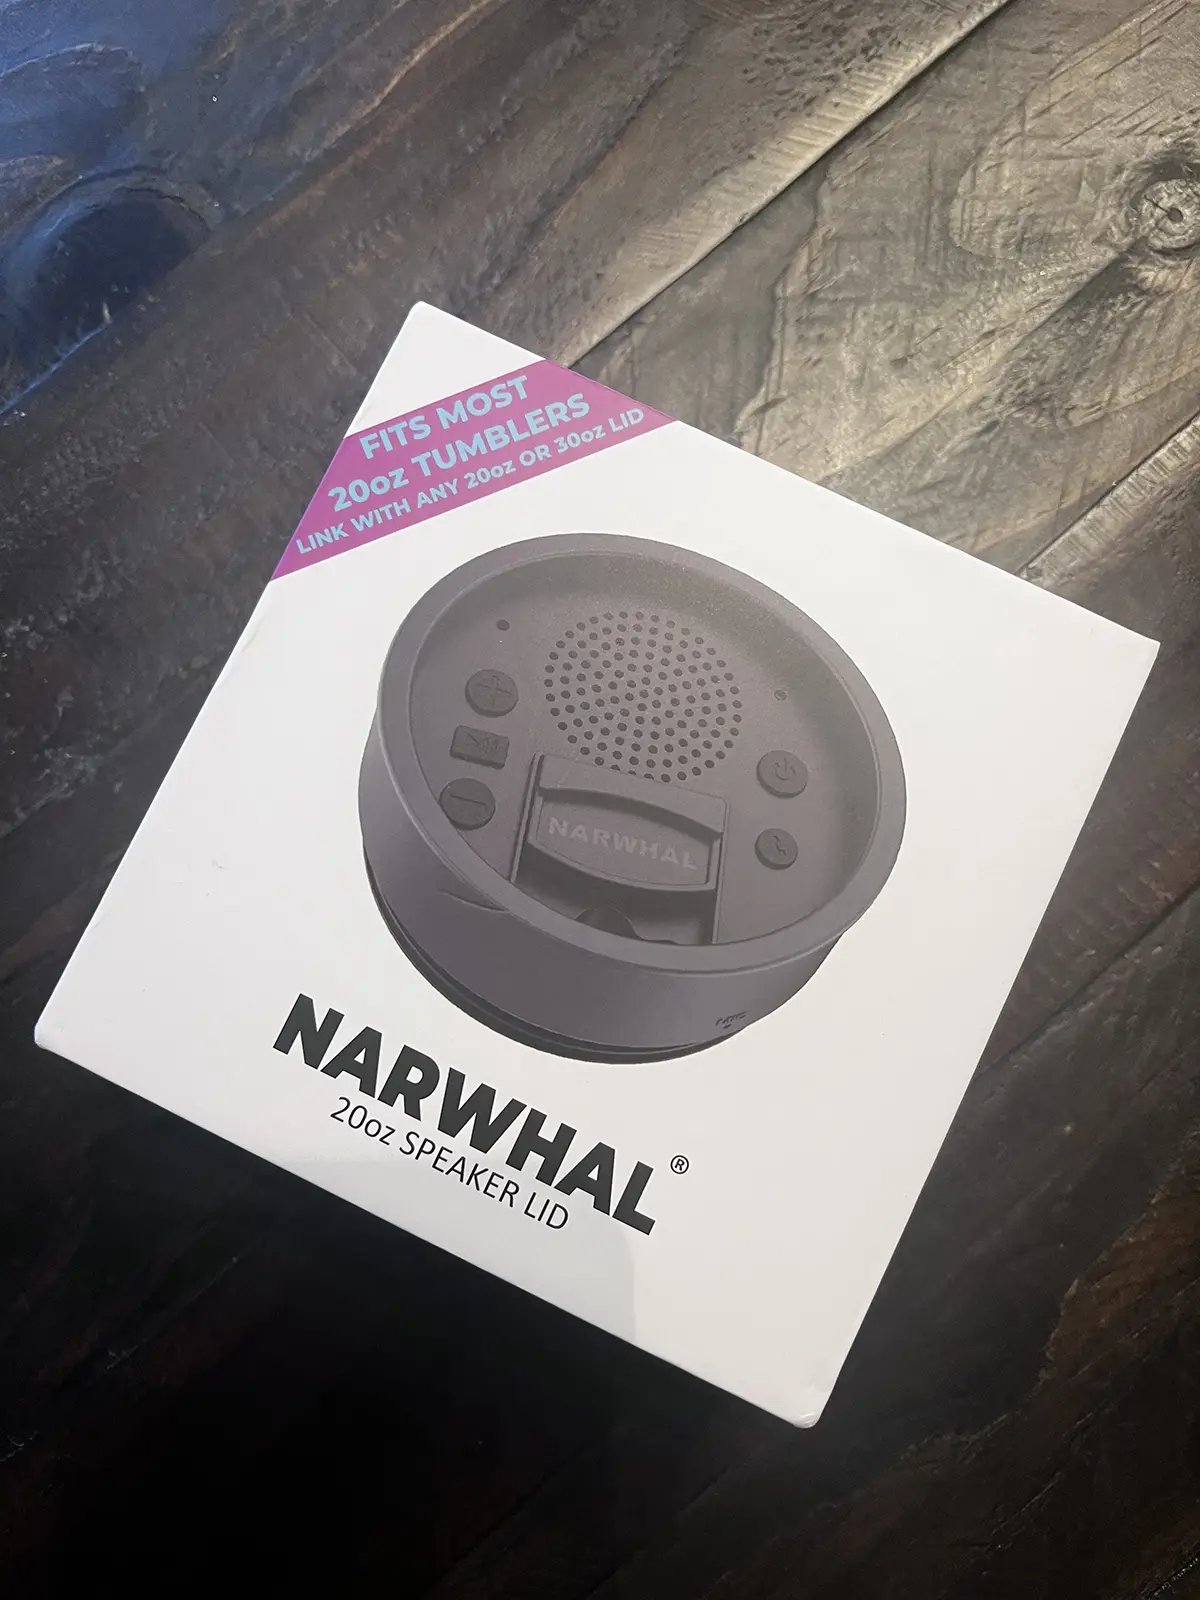 image of narwhal speaker lid package